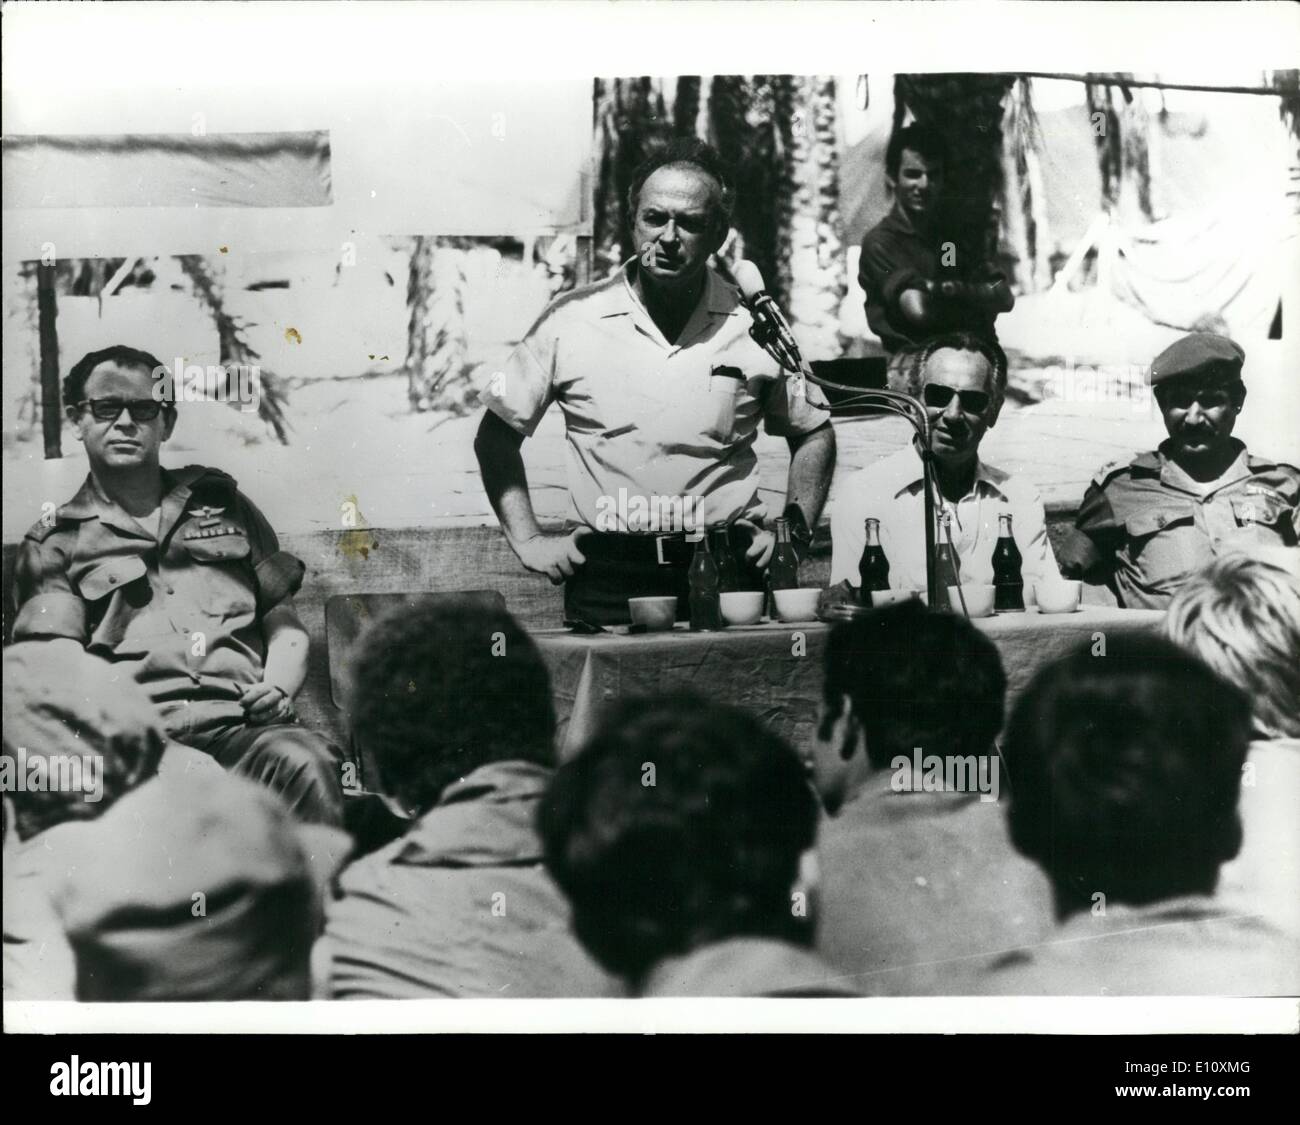 8. August 1974 - Premierminister von Israel Touren ägyptische Front: der israelische Ministerpräsident vor kurzem tourte die Trennung der Kräfte Linie entlang der ägyptischen Front und besucht Israel Defense Force Einheiten im Sinai. In seinen Gesprächen mit Soldaten und Kommandeure Herr Rabin betonte zum Thema Freiwilligenarbeit für reguläre Armee Dienst und Veranstaltungen in den Nachbarländern diskutiert. Das Foto zeigt Herrn Rabin gesehen, während seines Besuchs in der ägyptischen Front sprechen. Links ist Chef des Stabes, Generalleutnant M. Gur, zweiter von rechts ist der Verteidigungsminister, Herr D. Peres und extremen Rechten ist die G.O.C Stockfoto